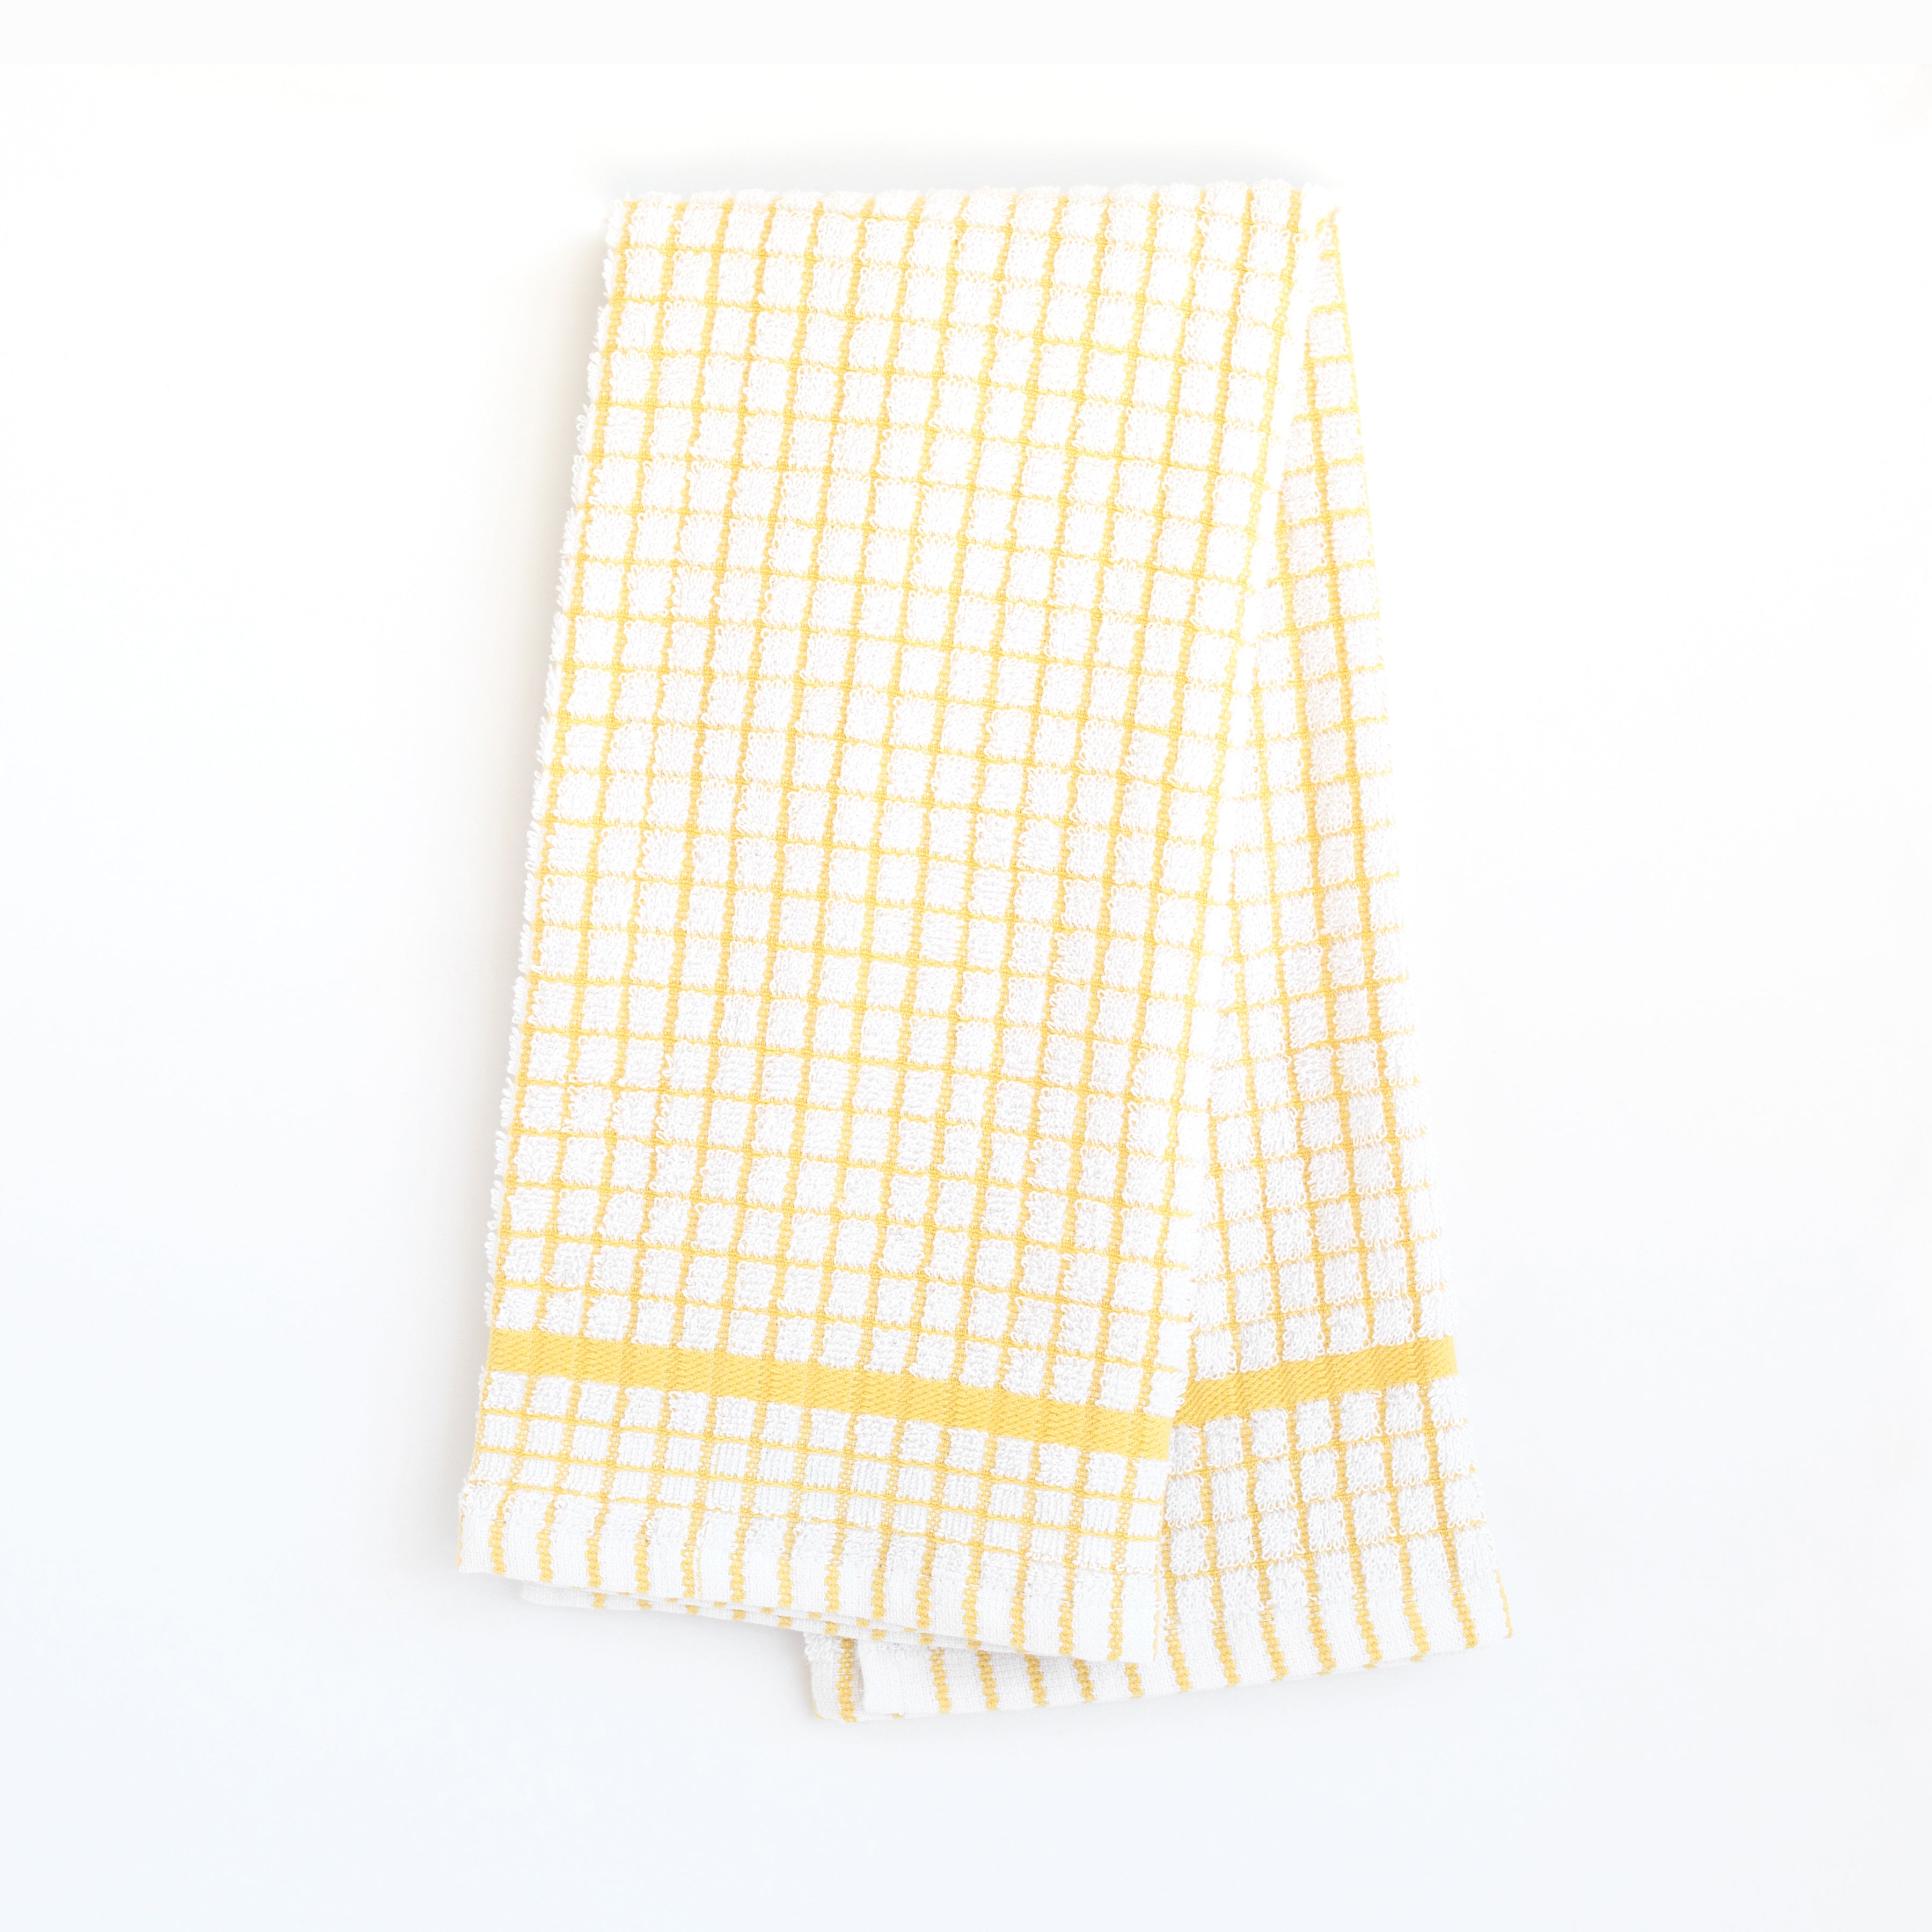 KAF Home Grid Terry Kitchen Towel - Black